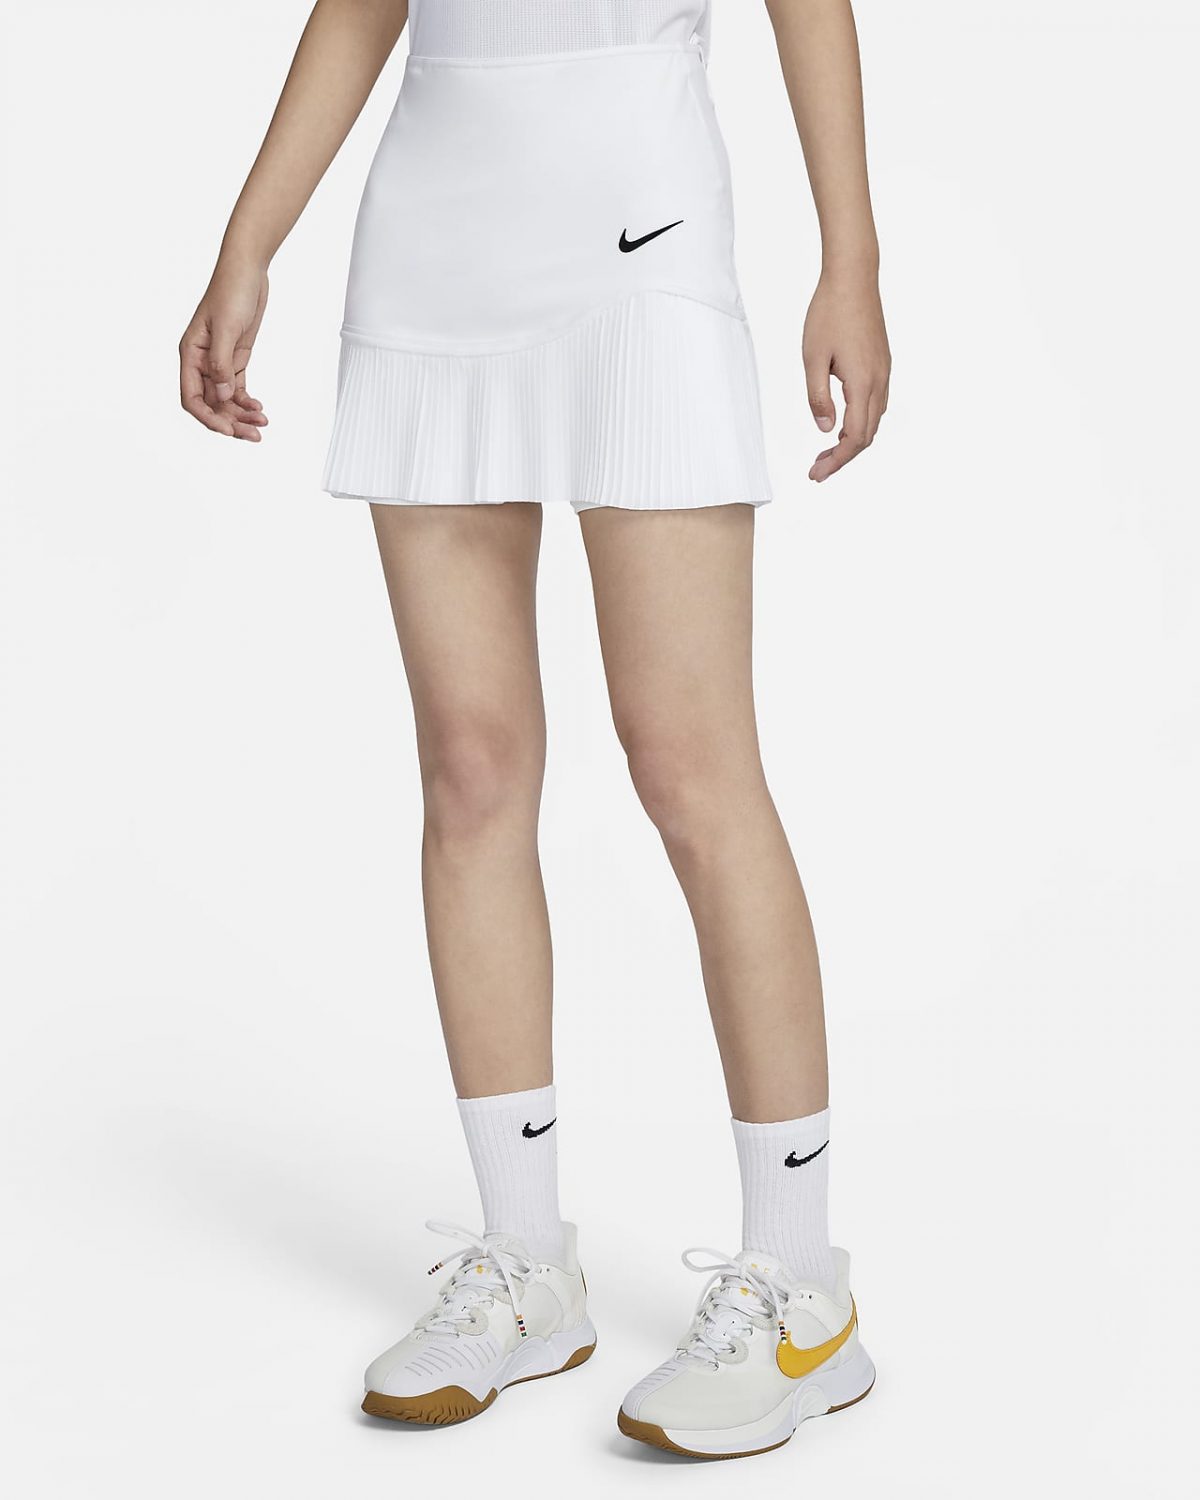 Женская юбка Nike Advantage фото